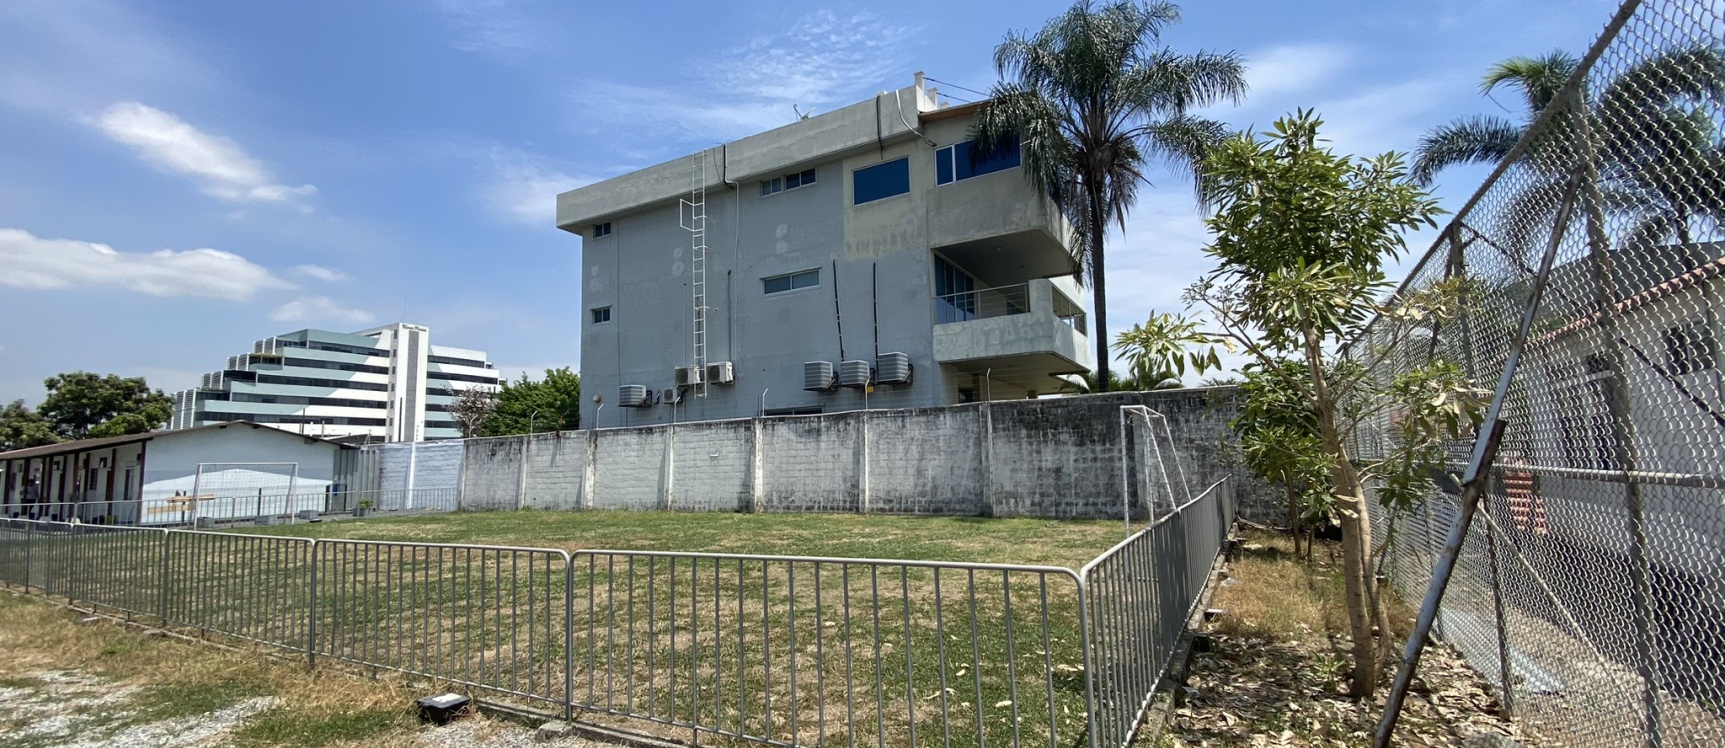 GeoBienes - Terreno, Macrolote en venta, Av. León Febres Cordero - Plusvalia Guayaquil Casas de venta y alquiler Inmobiliaria Ecuador